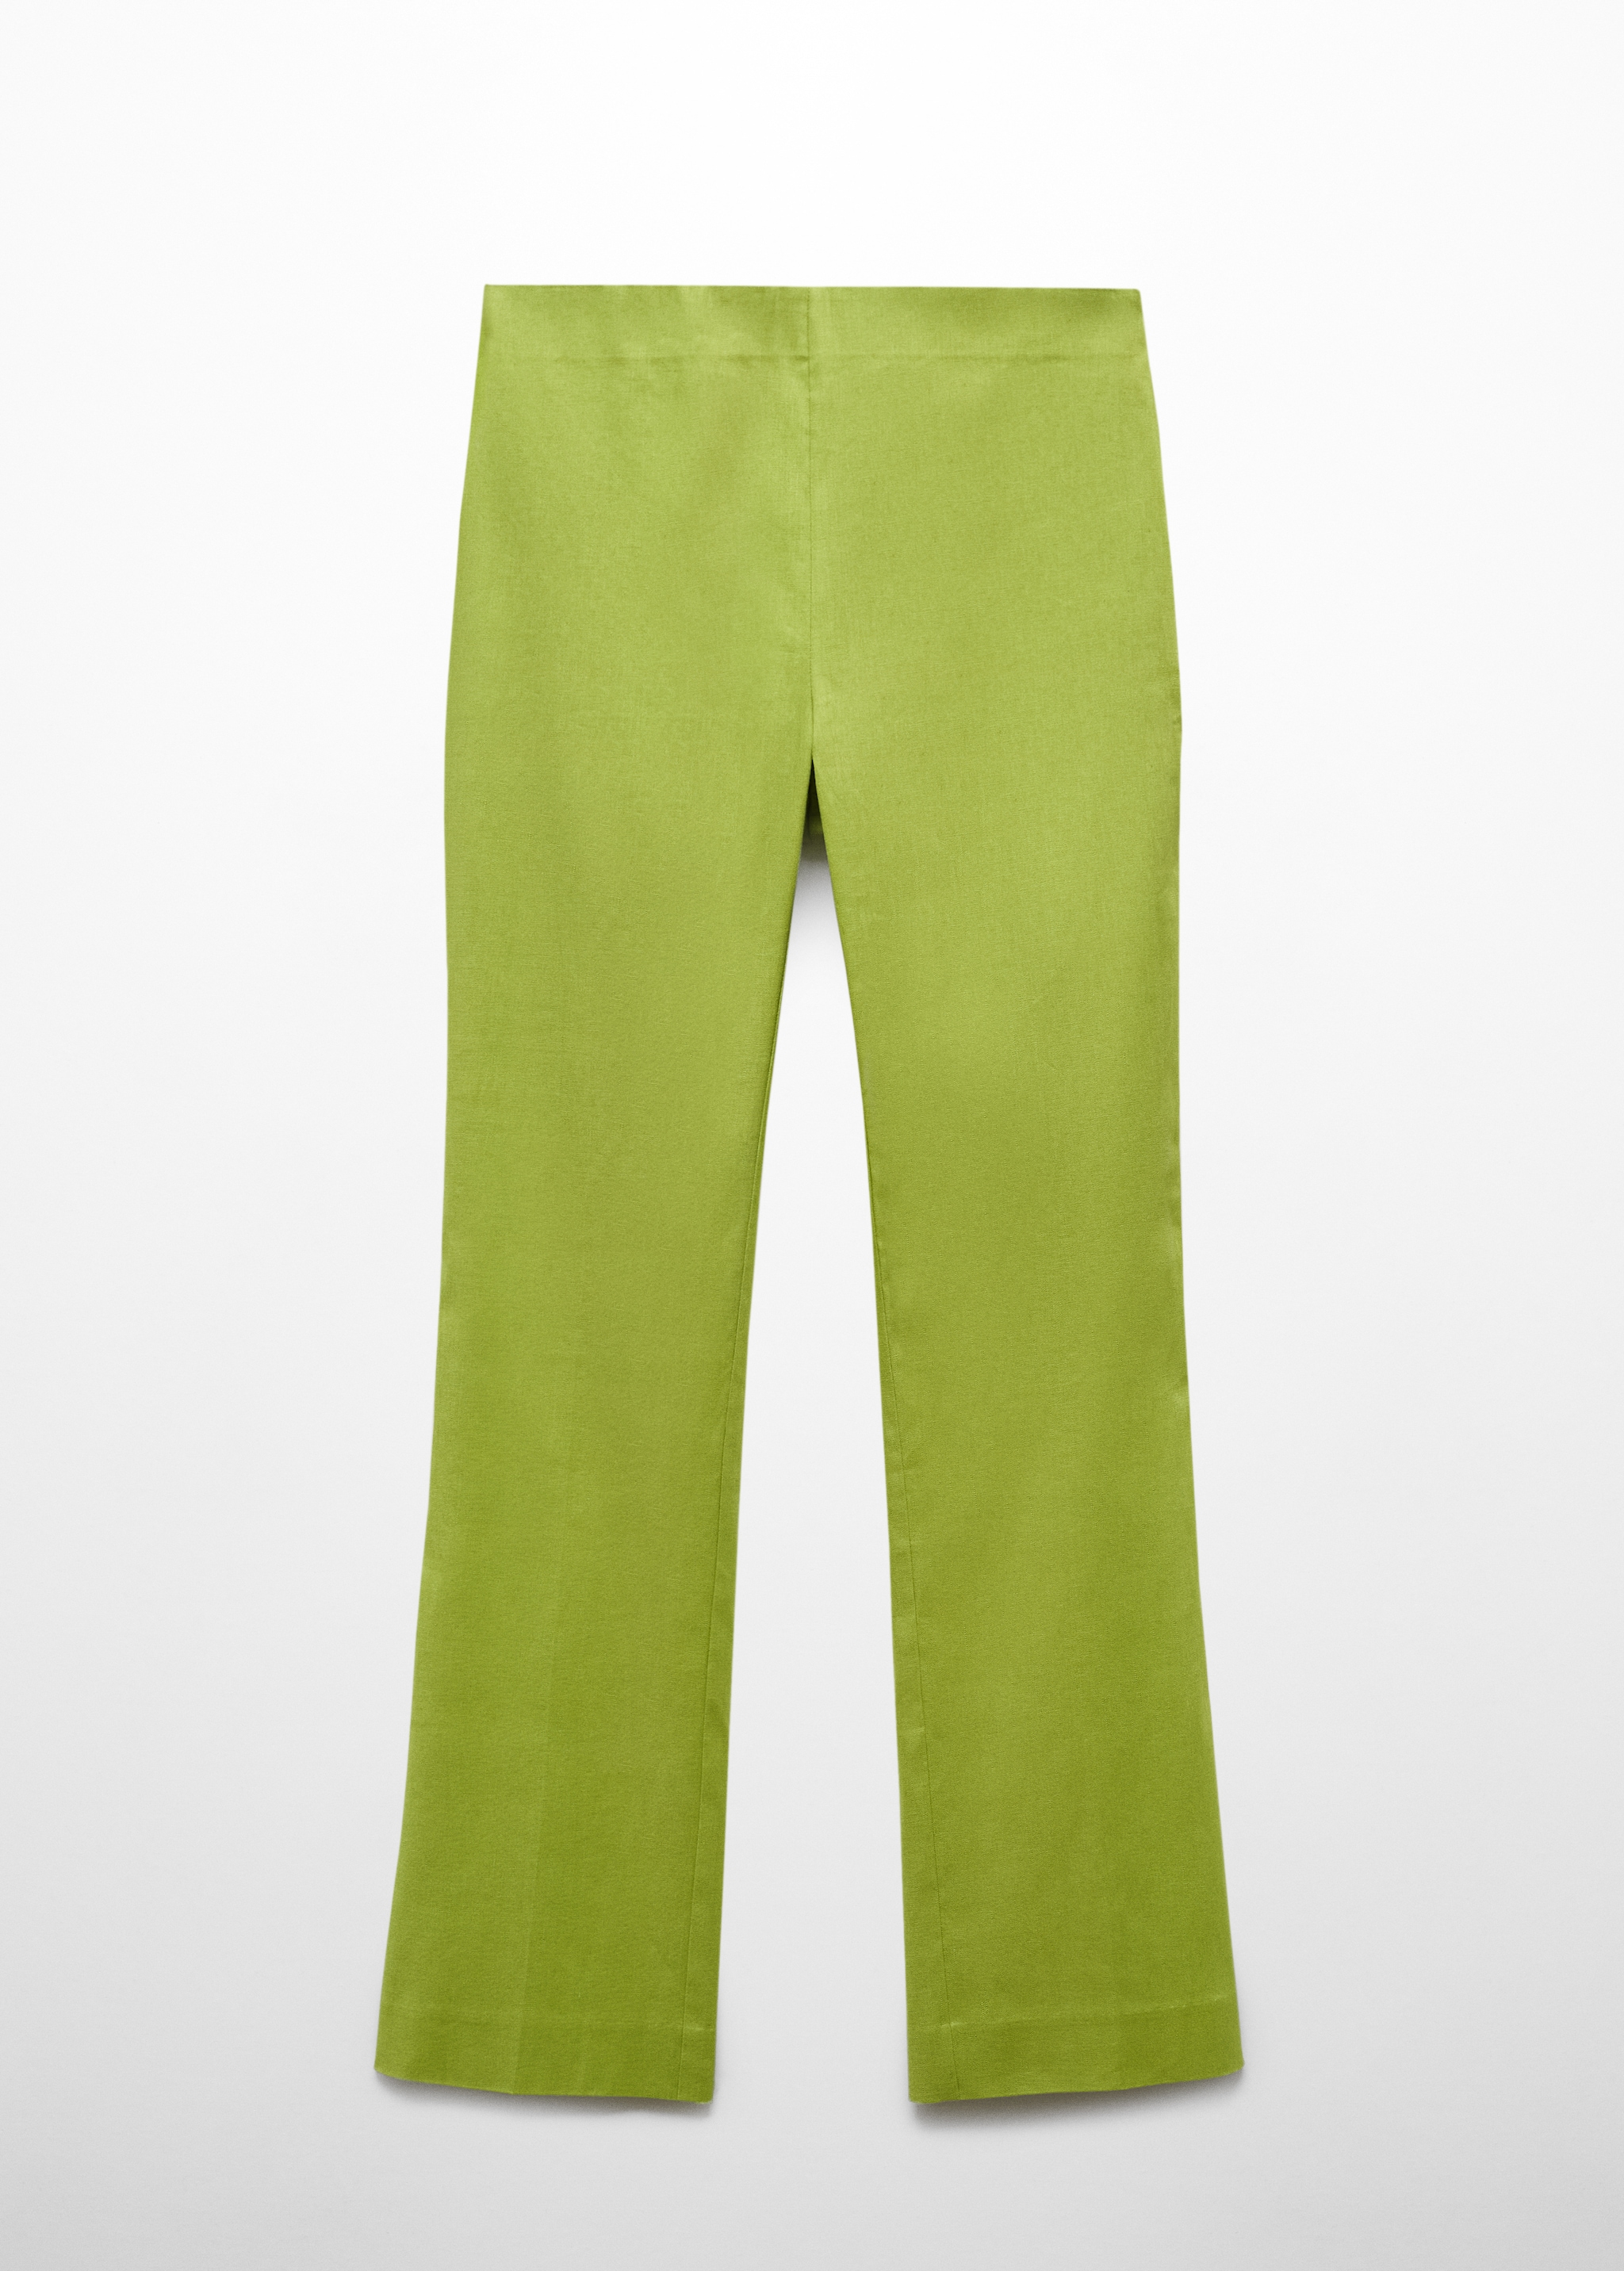 Pantaloni flare lino - Articolo senza modello